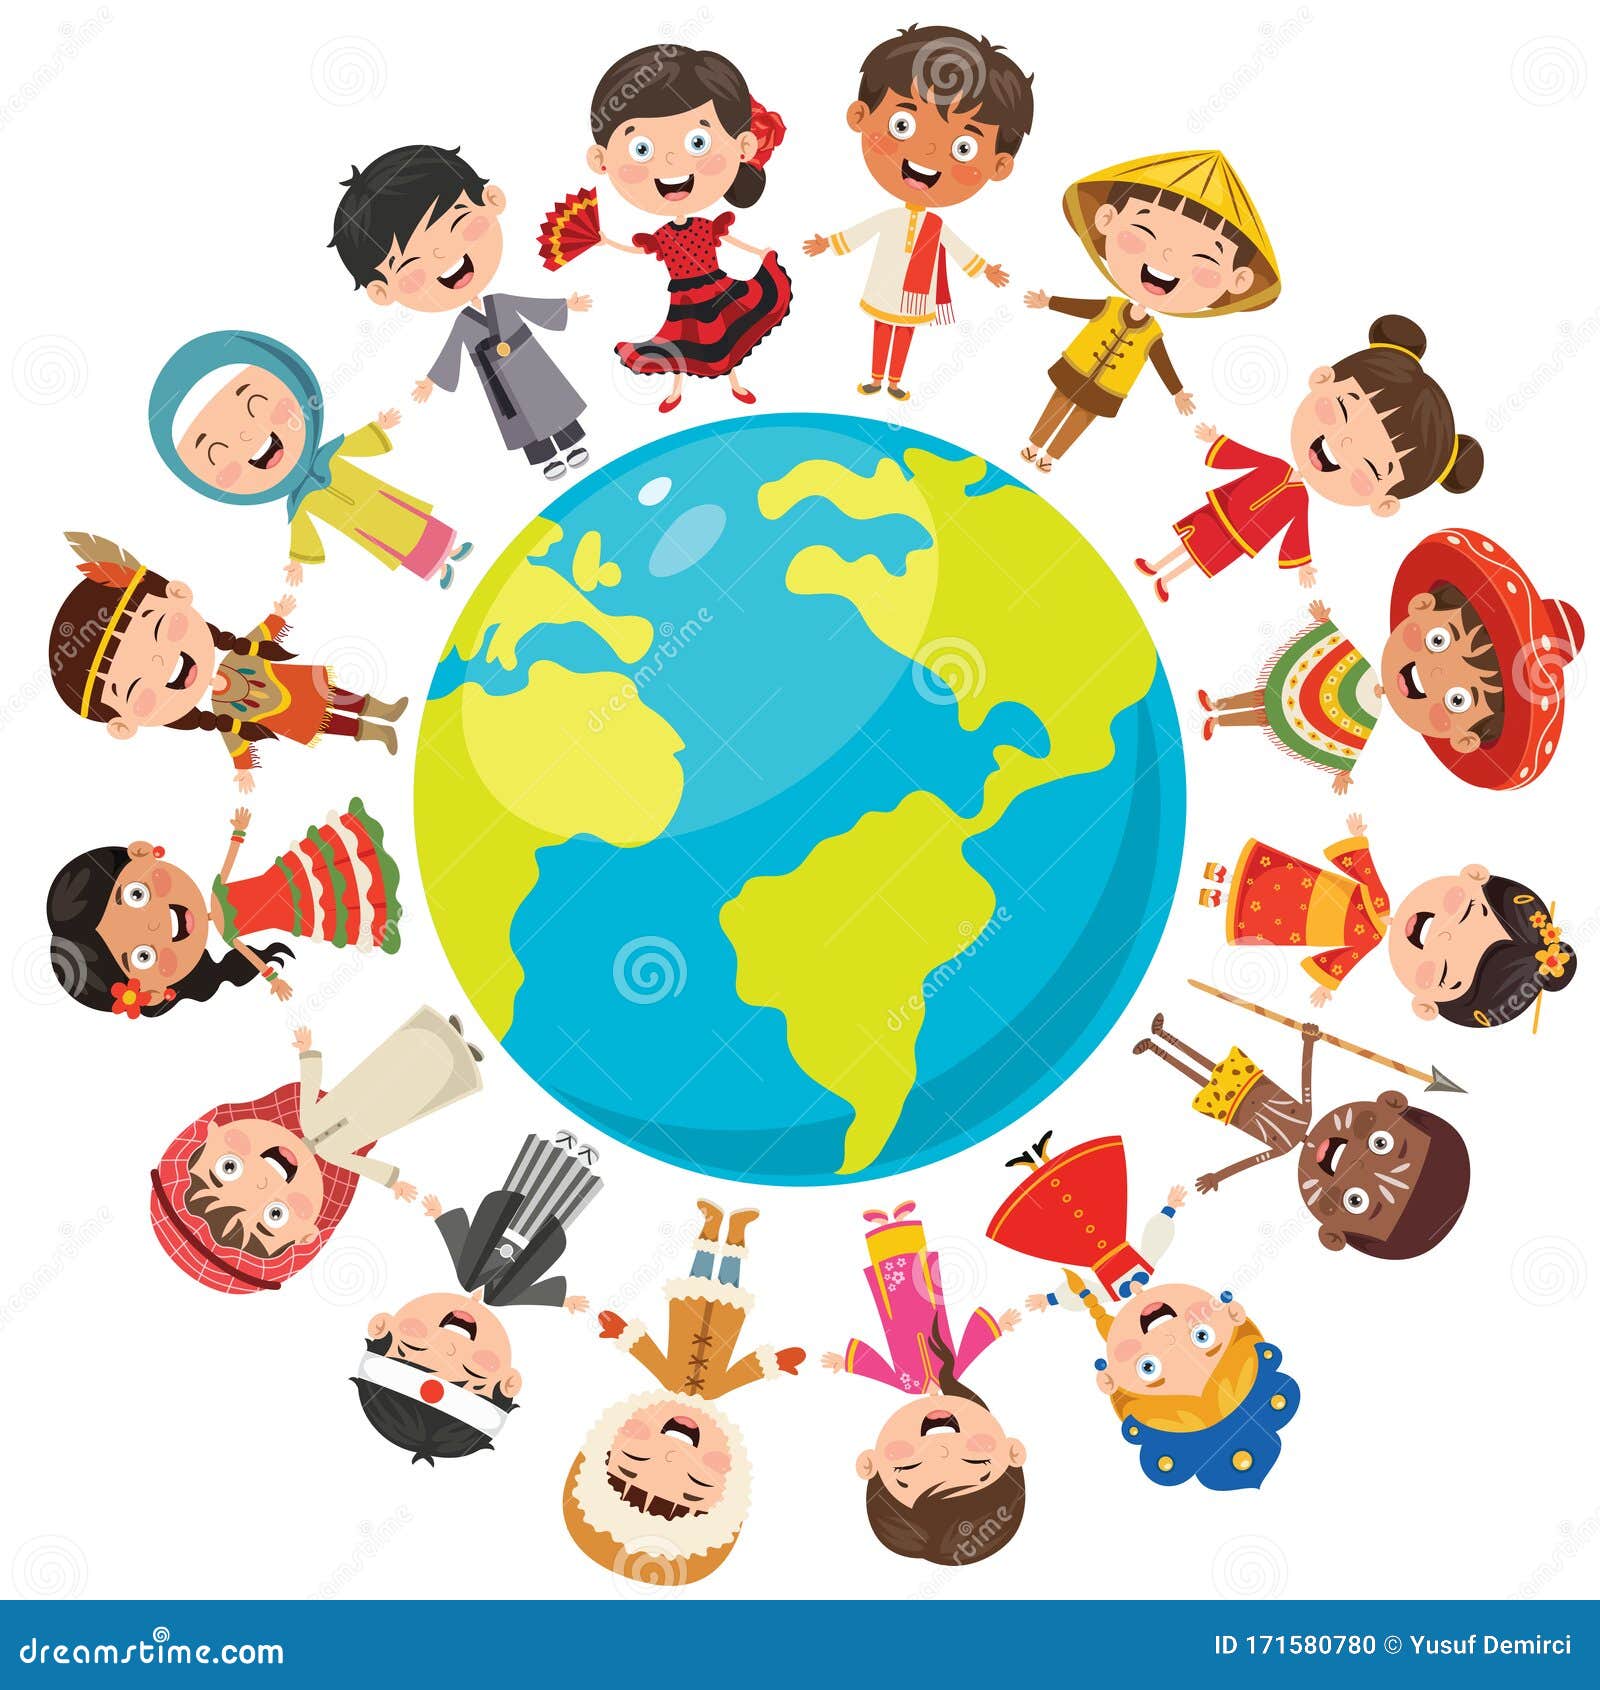 Happy Children Different Races Cartoon Vector | CartoonDealer.com #45749989